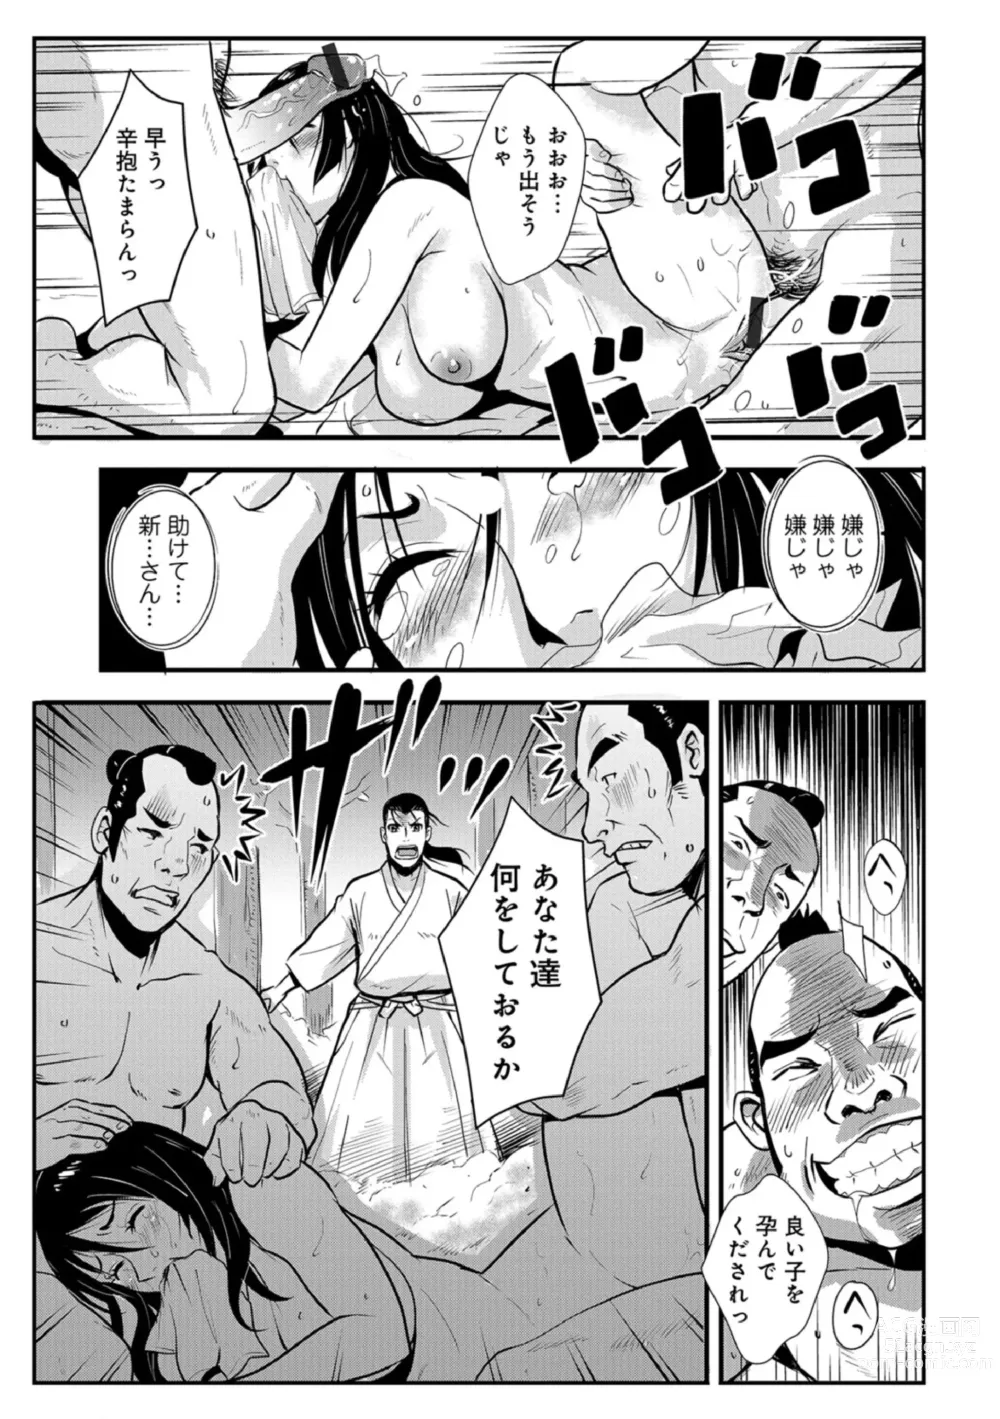 Page 13 of manga Harami samurai 07 ~Munen to Ryoujoku no Yabu no Naka~